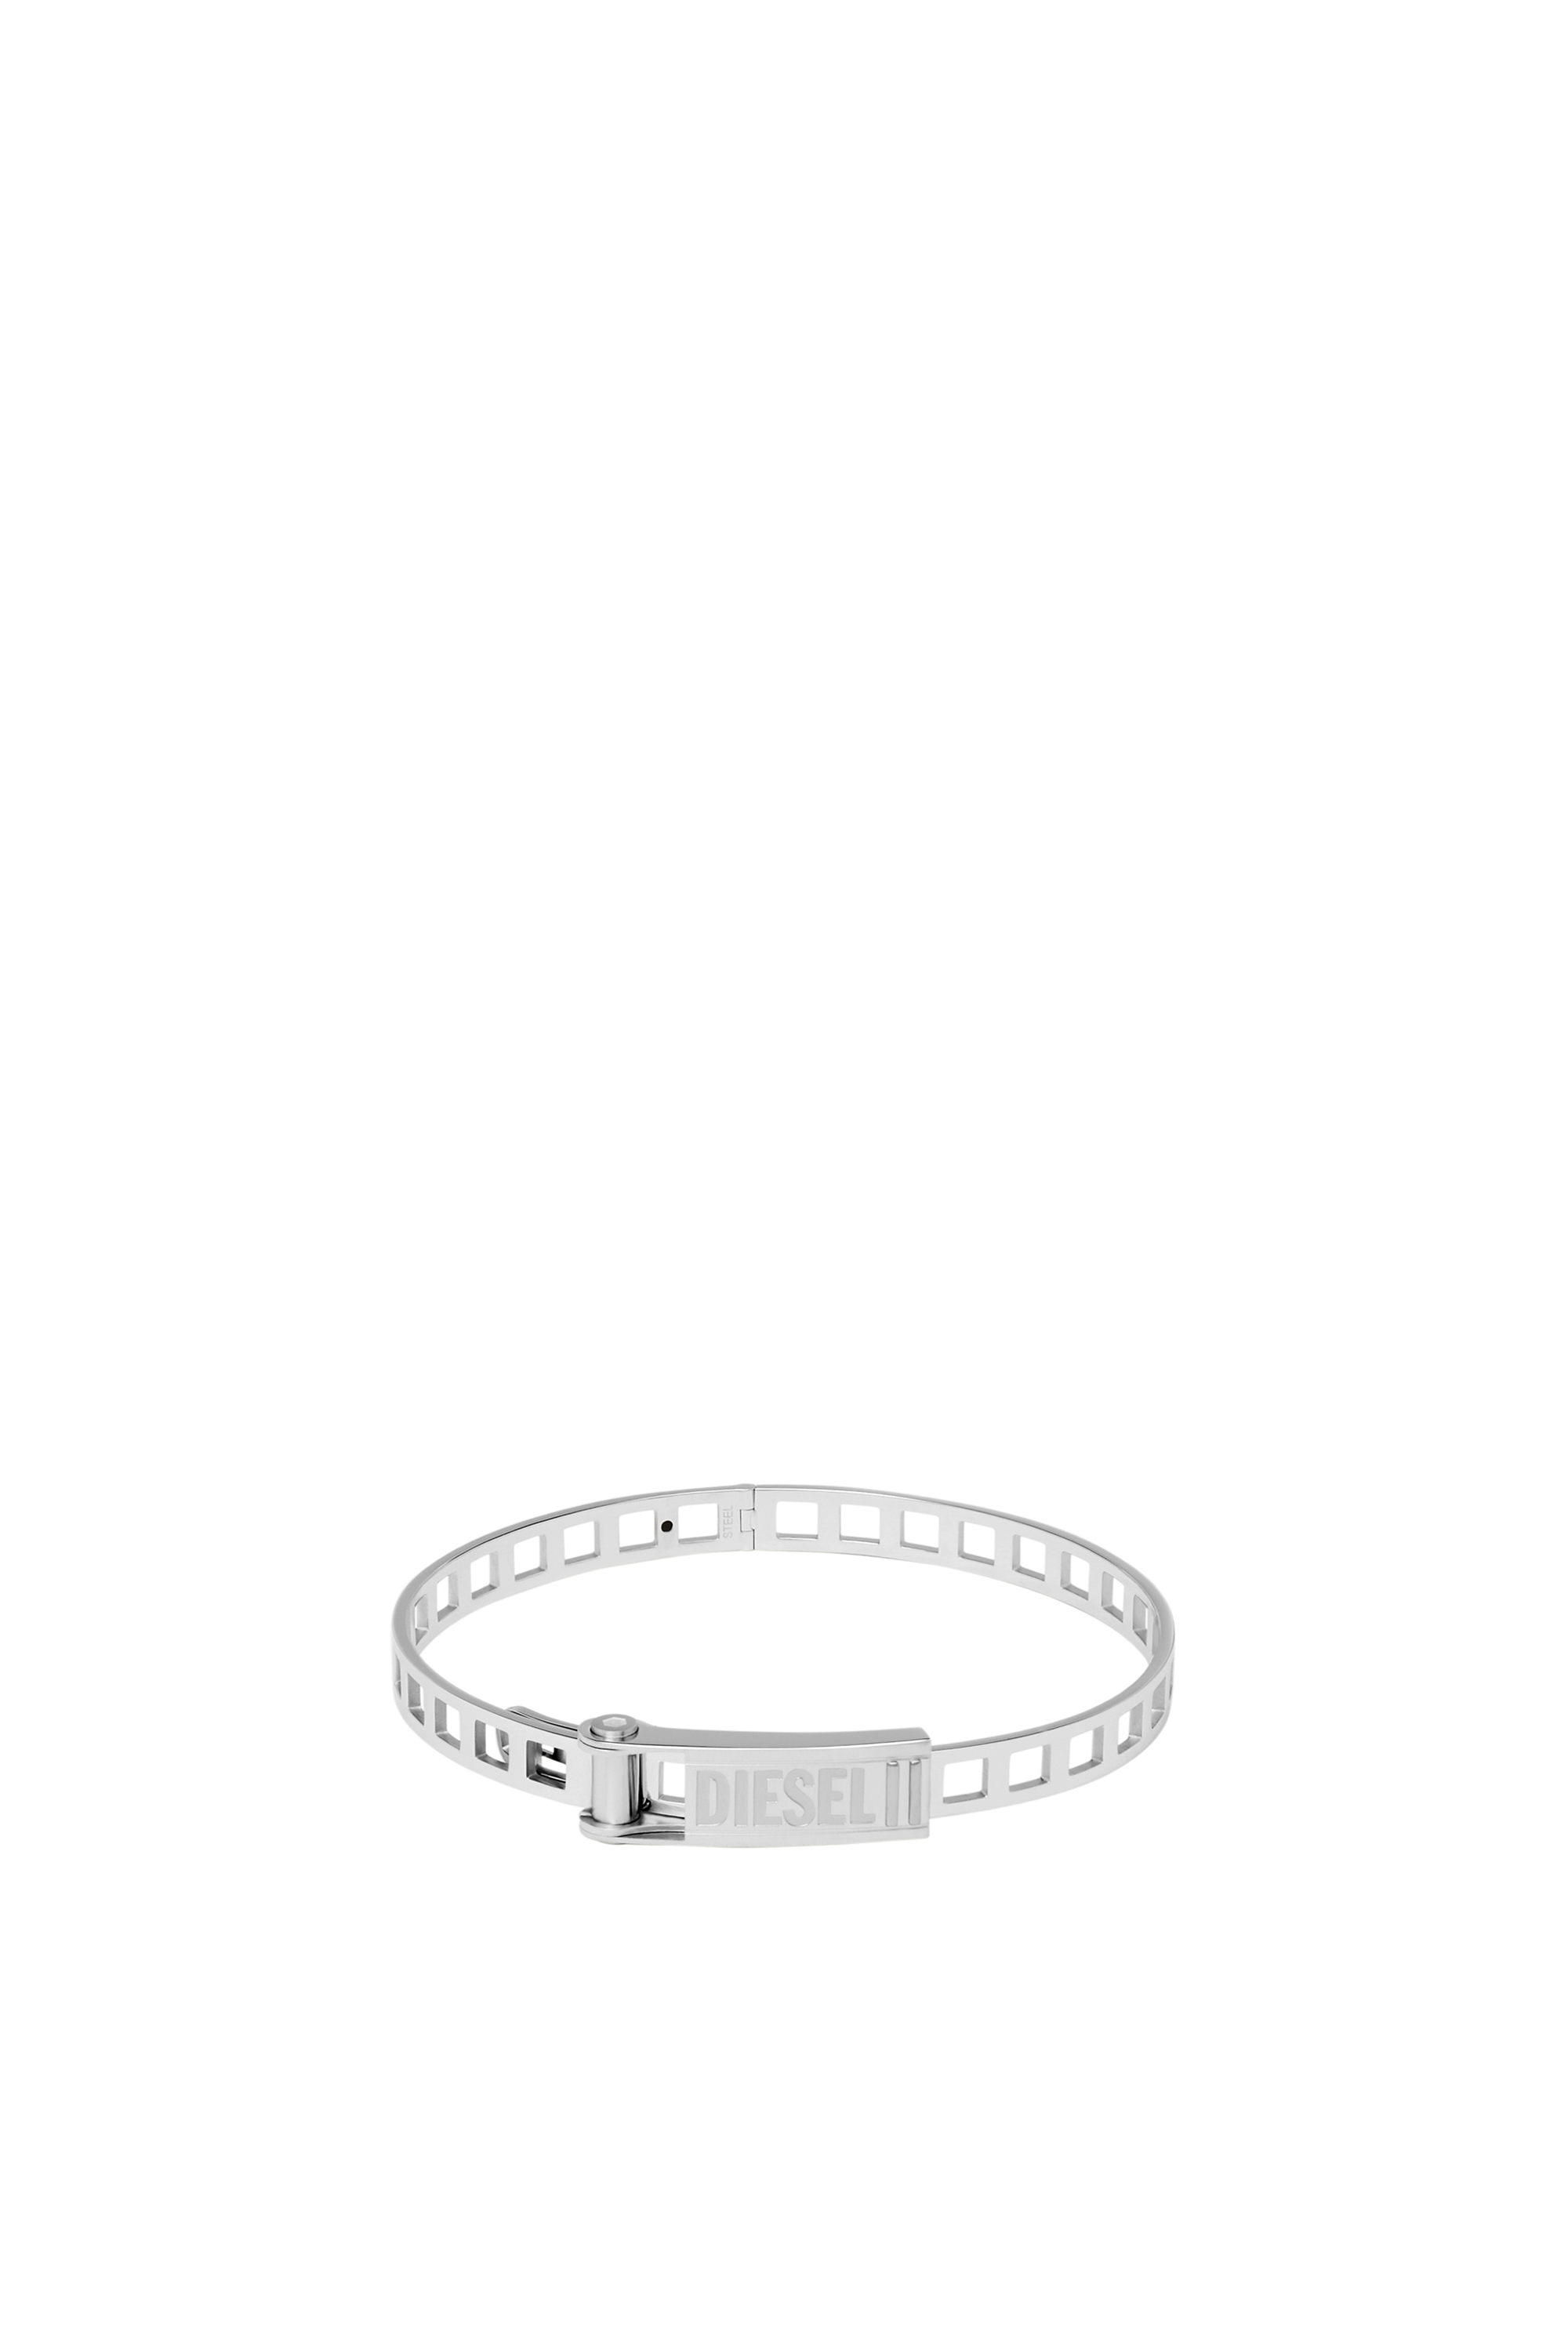 DX1356: Stainless steel stack bracelet | Diesel